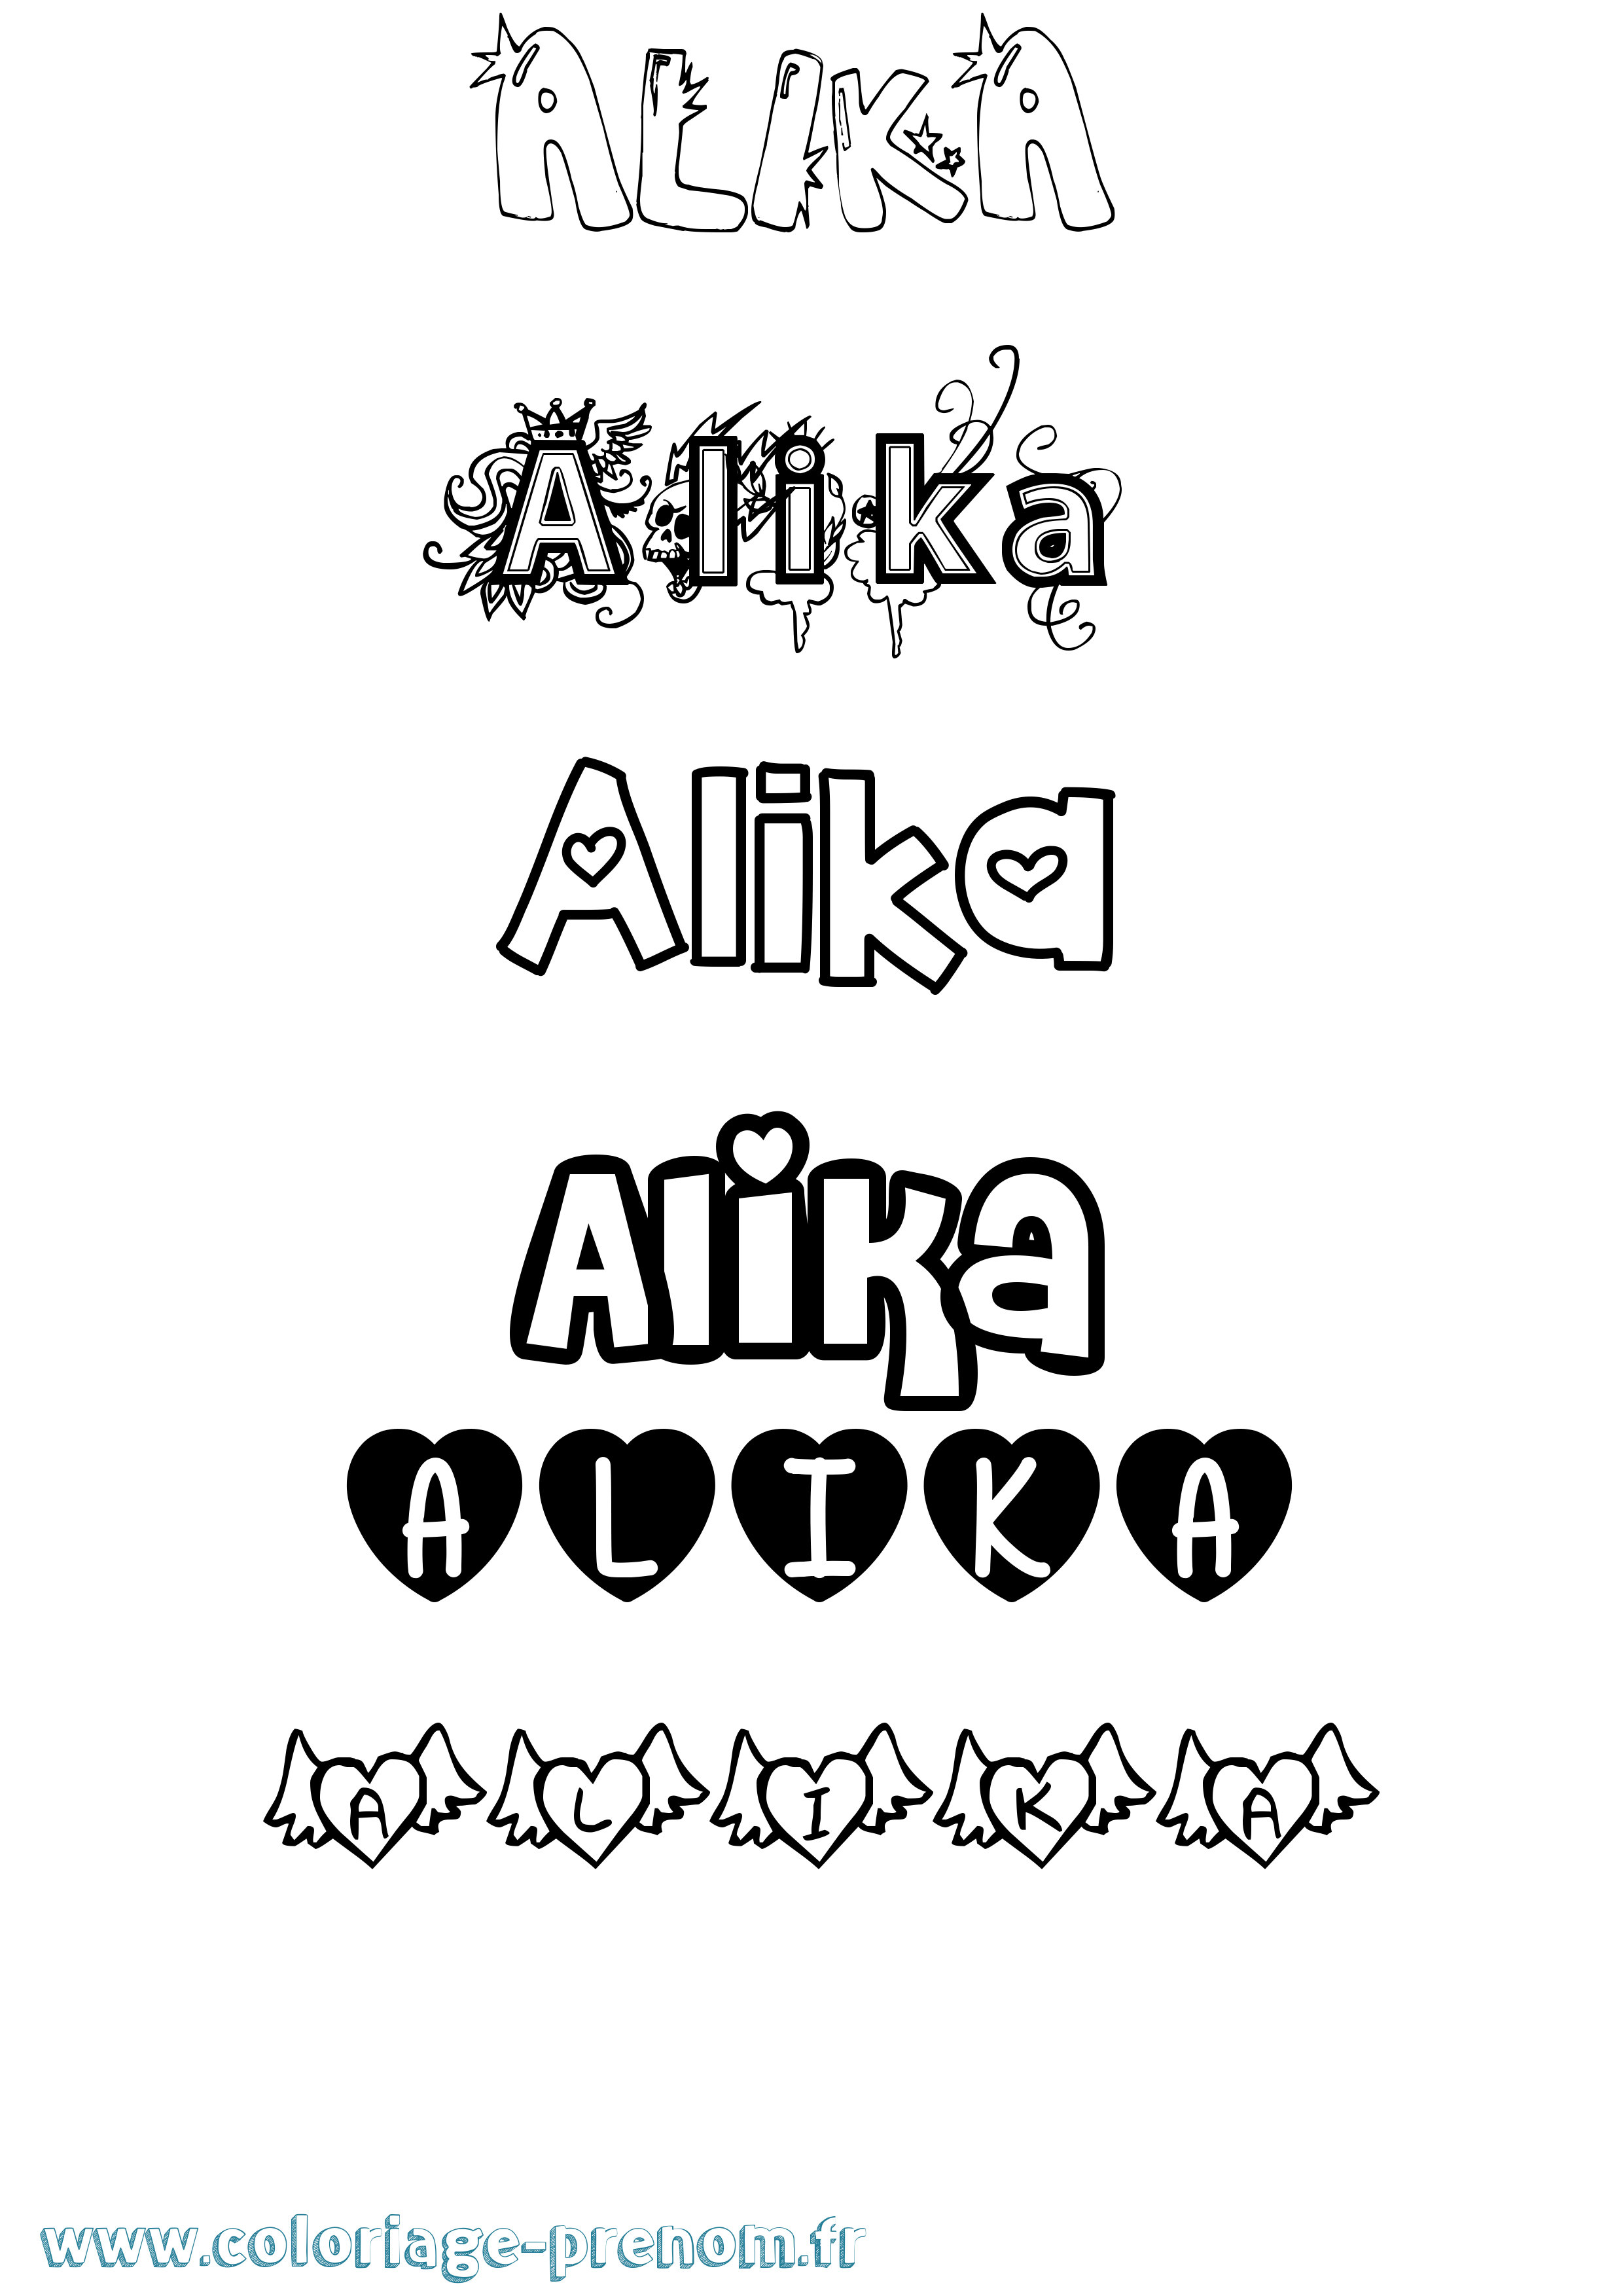 Coloriage prénom Alika Girly